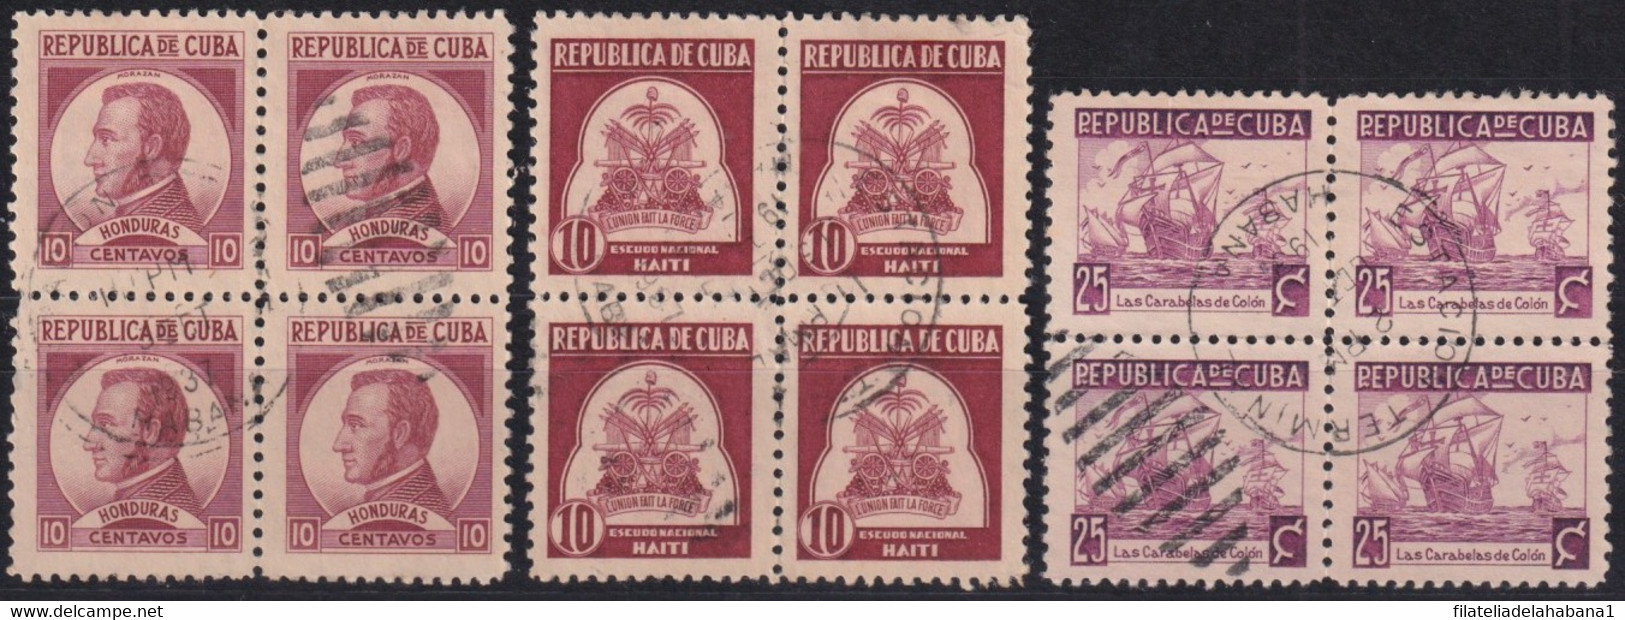 1937-442 CUBA REPUBLICA 1937 WRITTER & ARTIST CANCELLED BLOCK 4. - Gebraucht